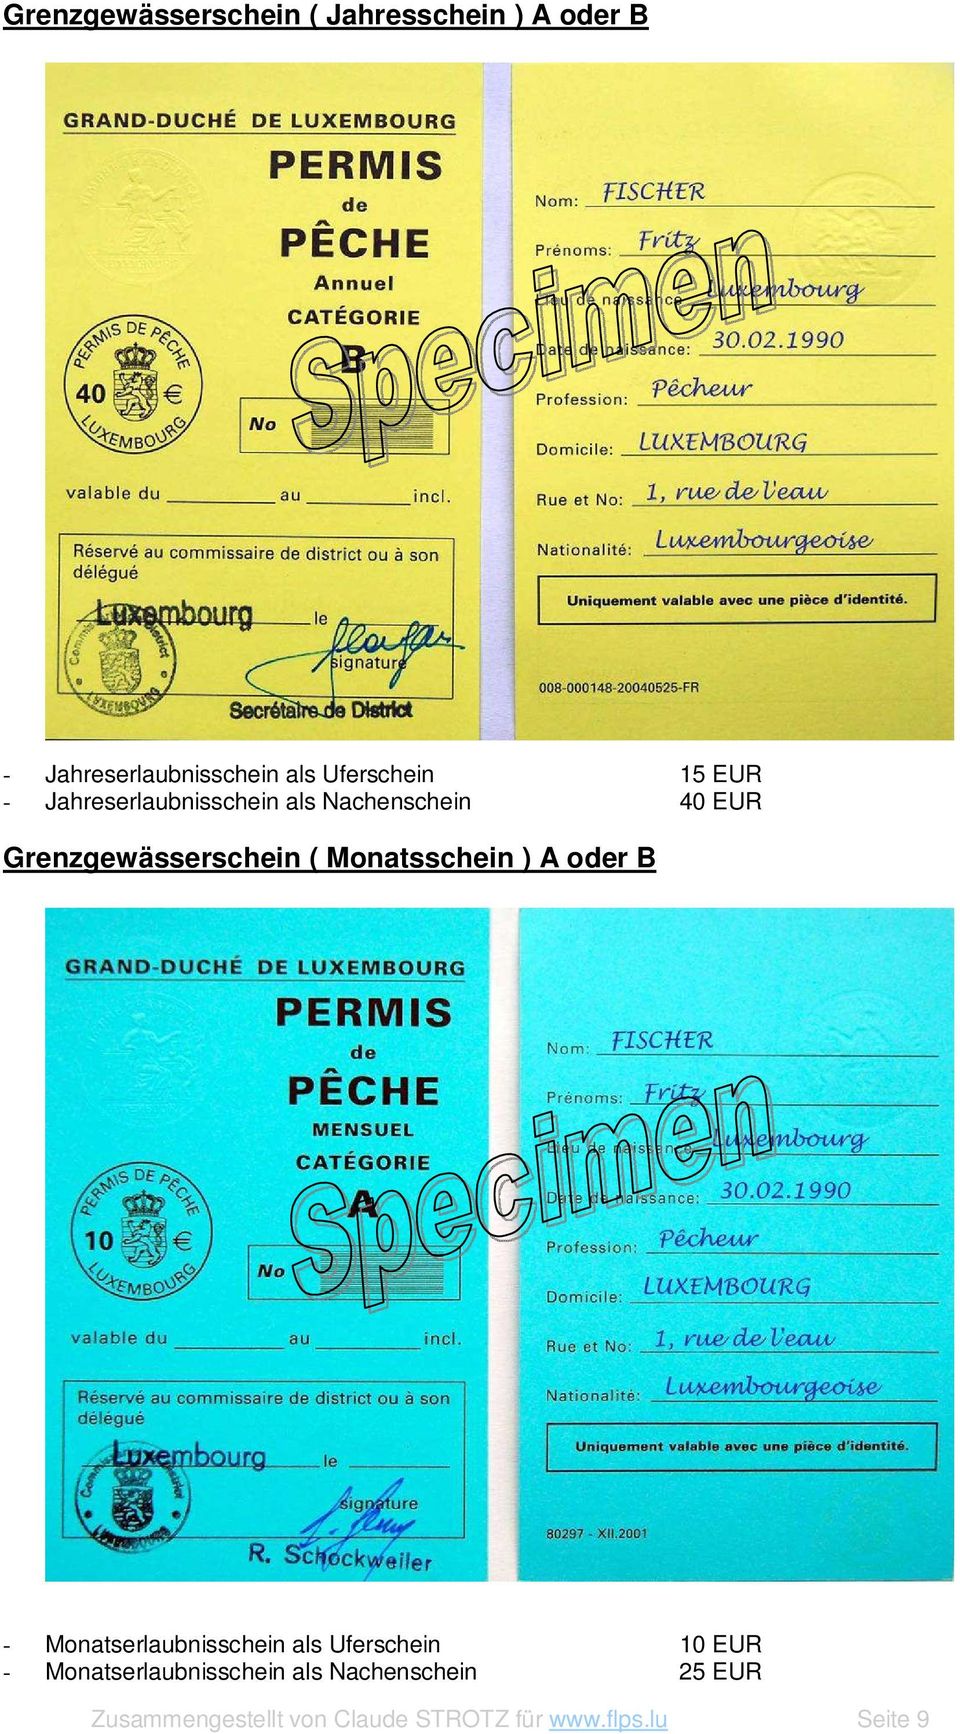 Monatsschein ) A oder B - Monatserlaubnisschein als Uferschein 10 EUR -